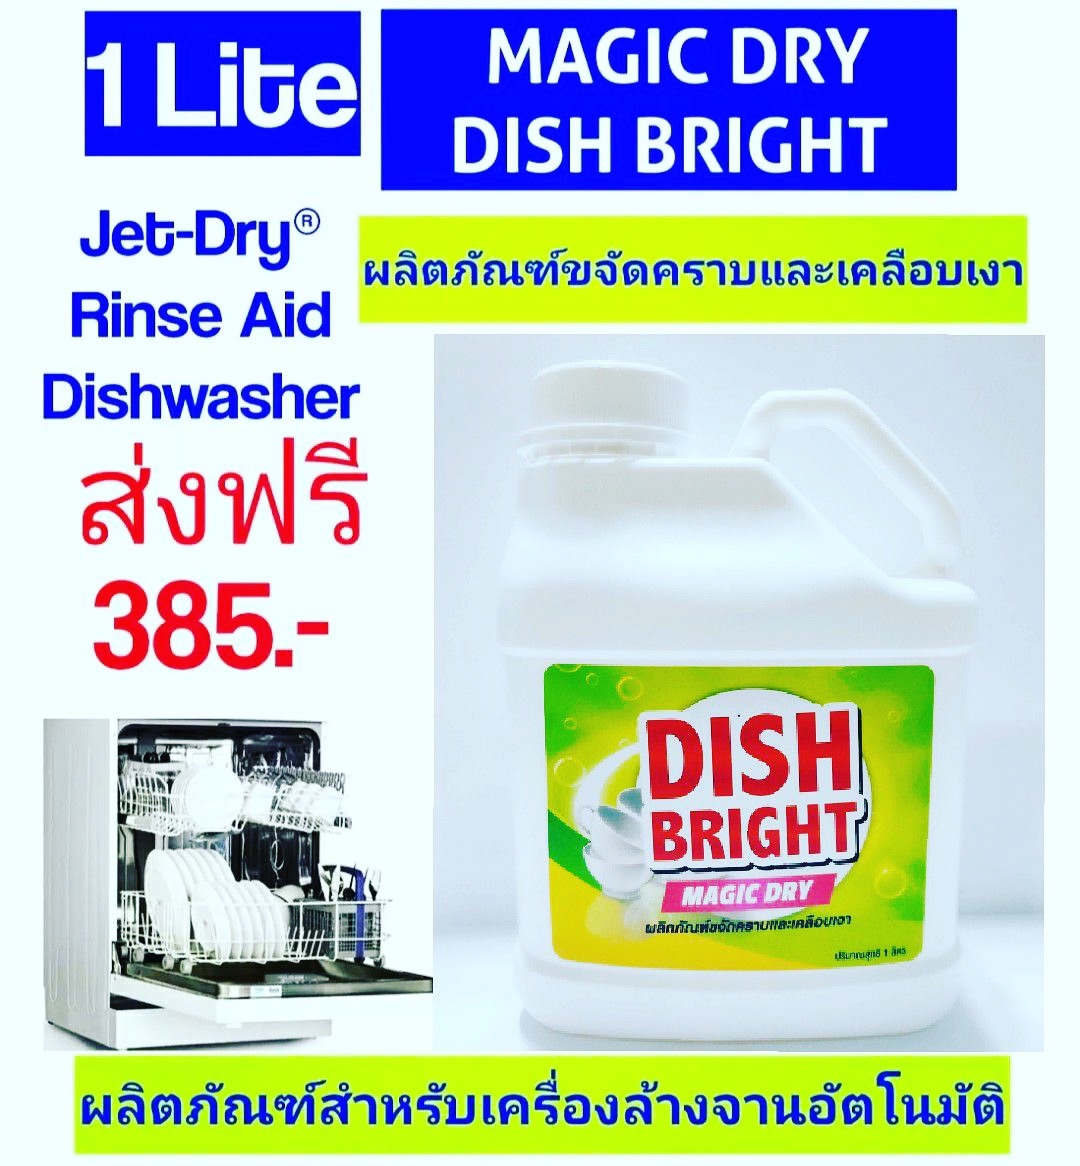 น้ำยาเคลือบเงาภาชนะ น้ำยาแวววาว น้ำยาวับวาว ราคาถูก คุณภาพดี สำหรับเครื่องล้างจานอัตโนมัติ Dish Bright Magic Dry